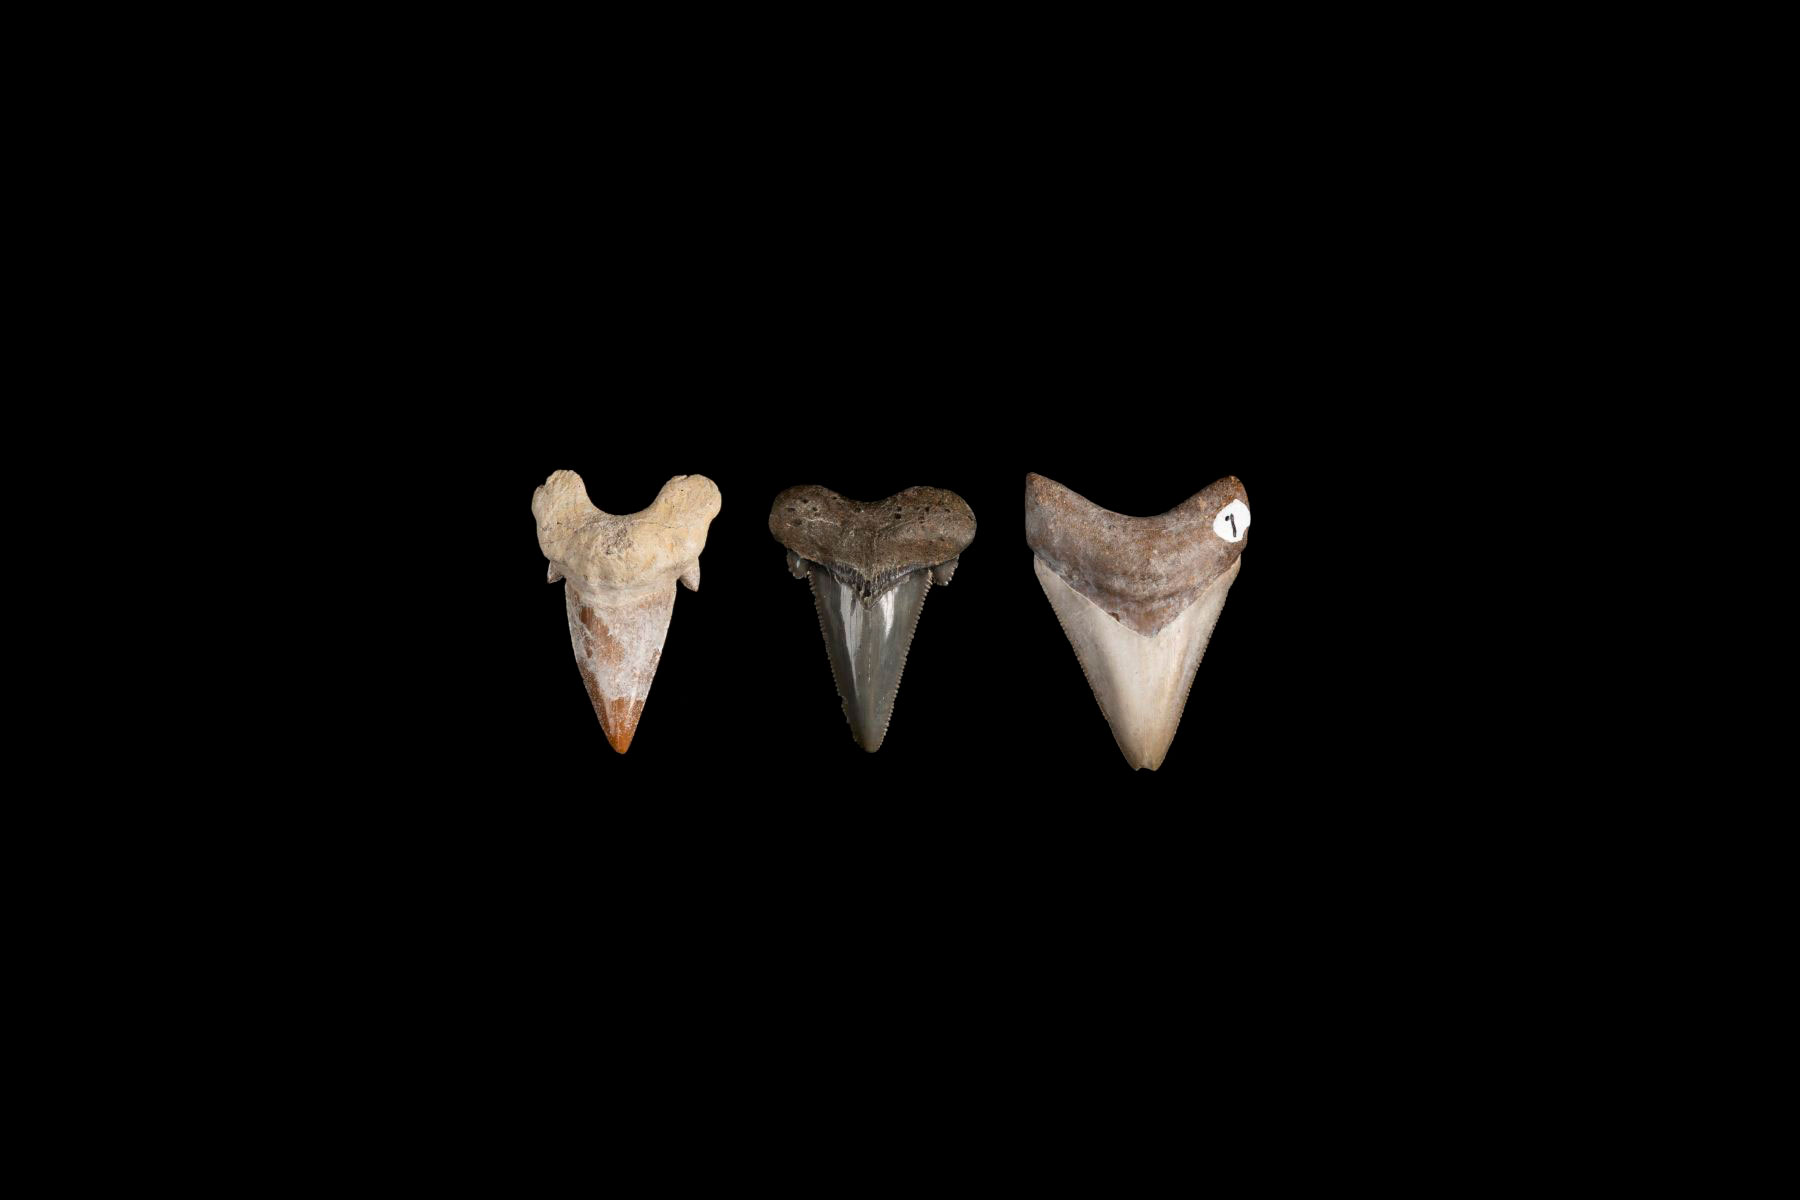 An image of three shark teeth